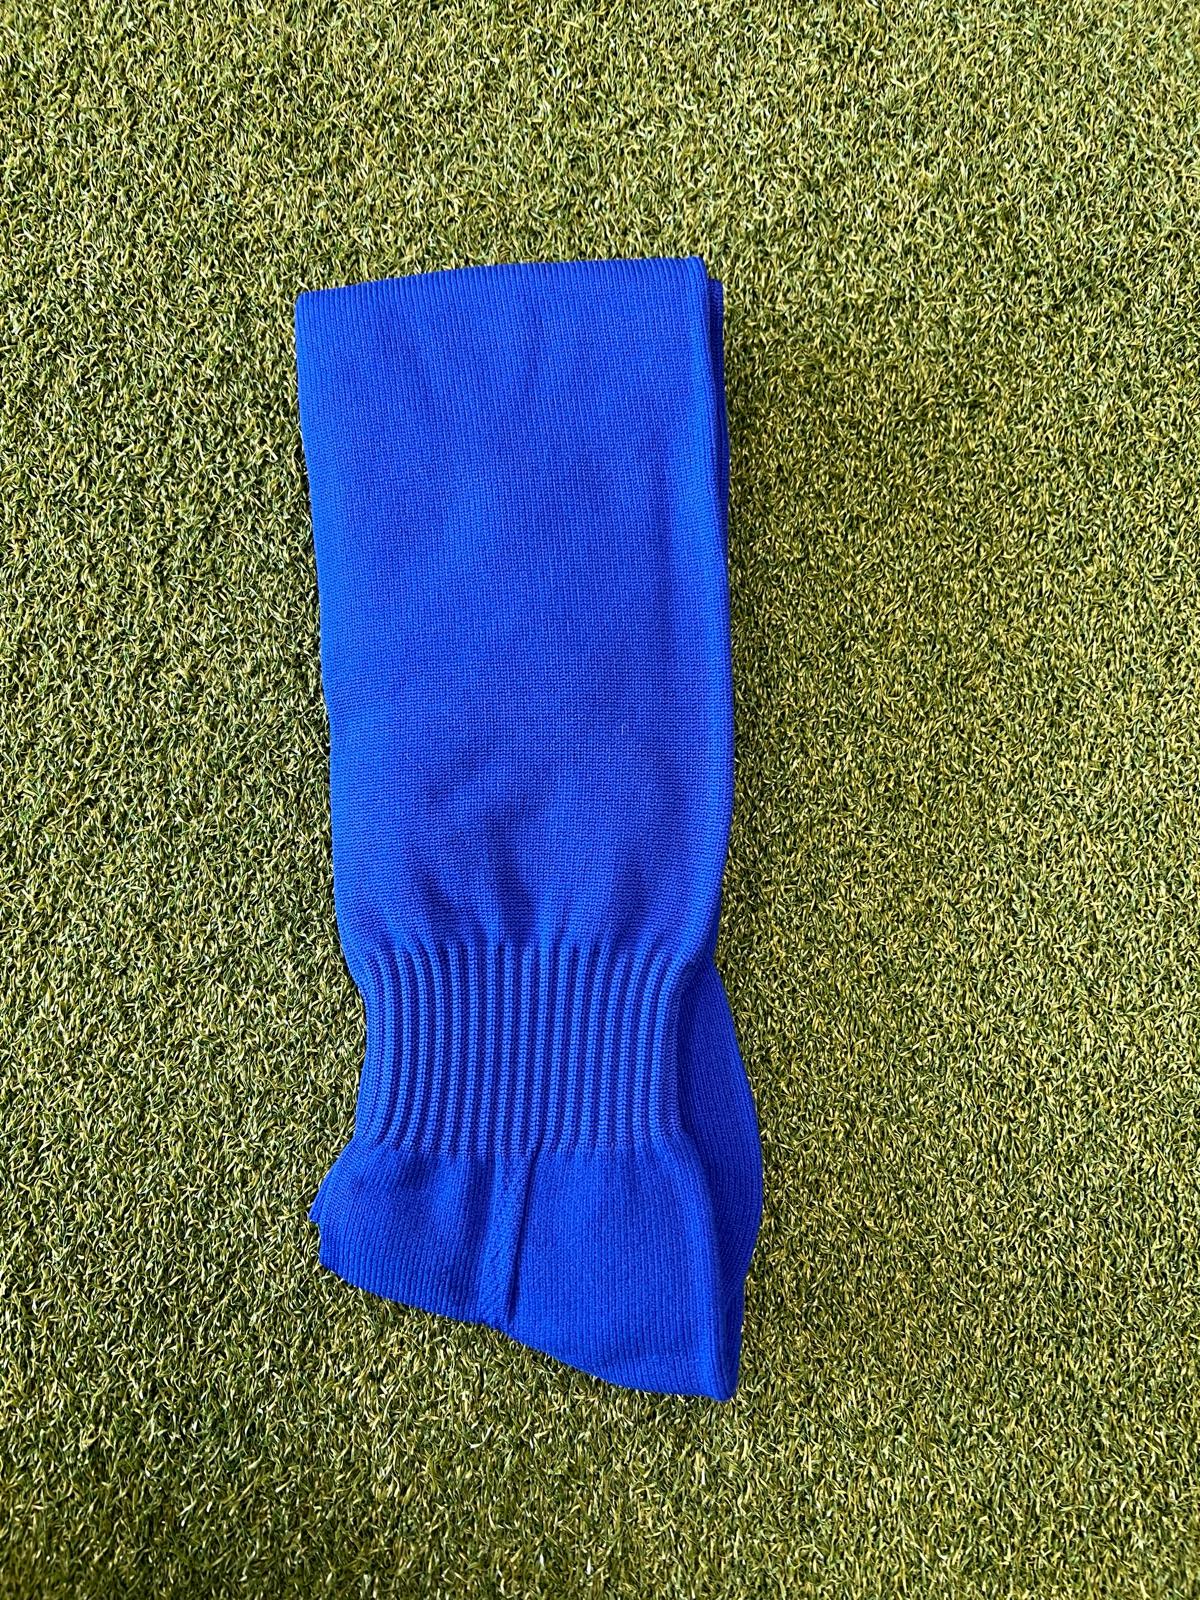 NF Blue Football Sock in Junior